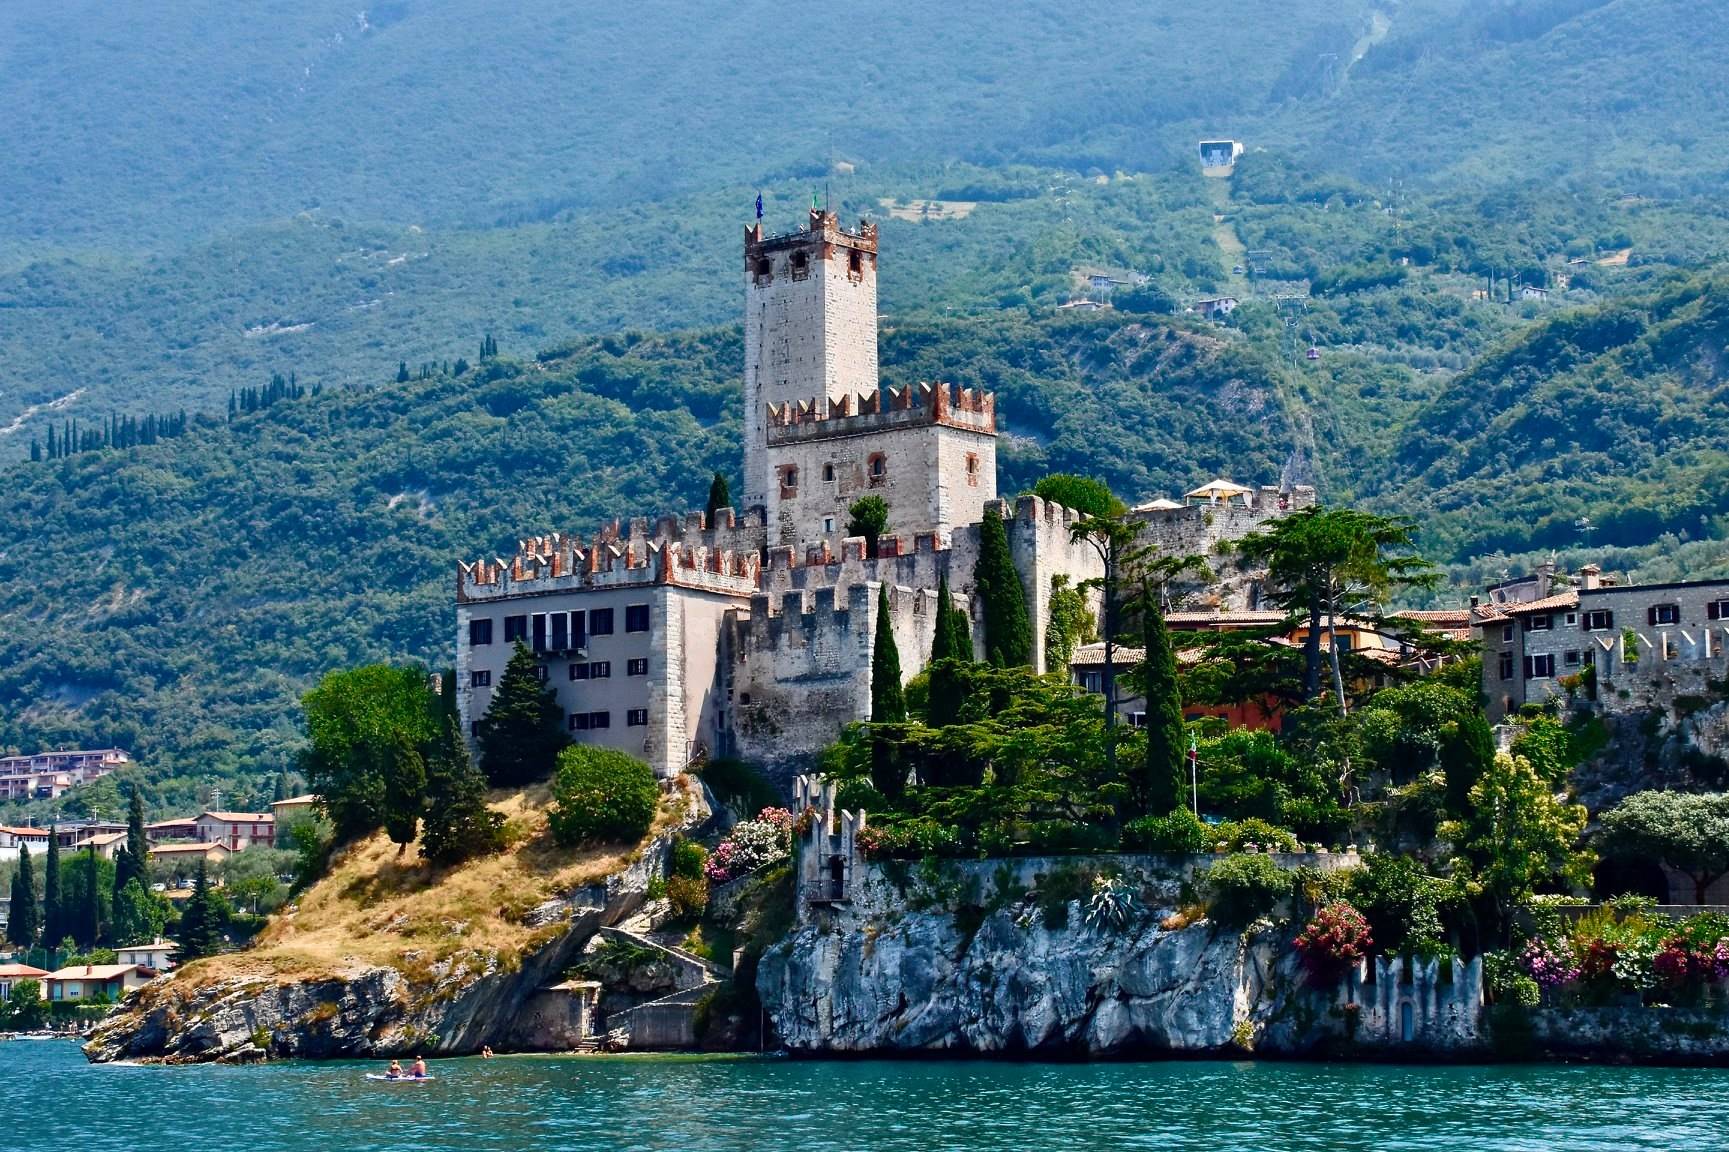 Baitone Alpino suggest: Castle of Malcesine